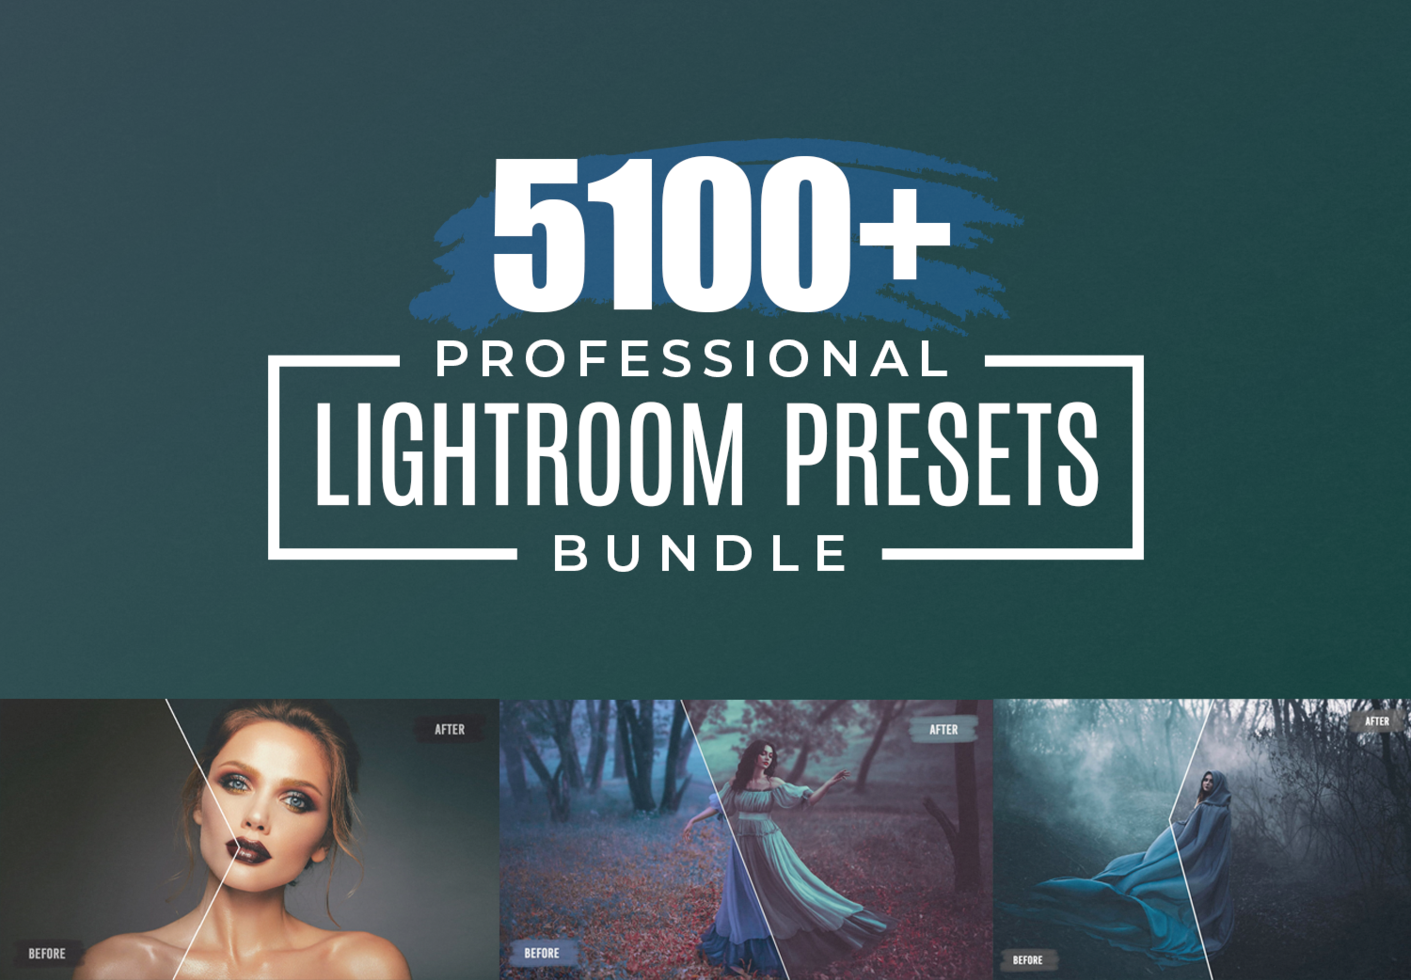 5100 Professional Lightroom Presets bundle